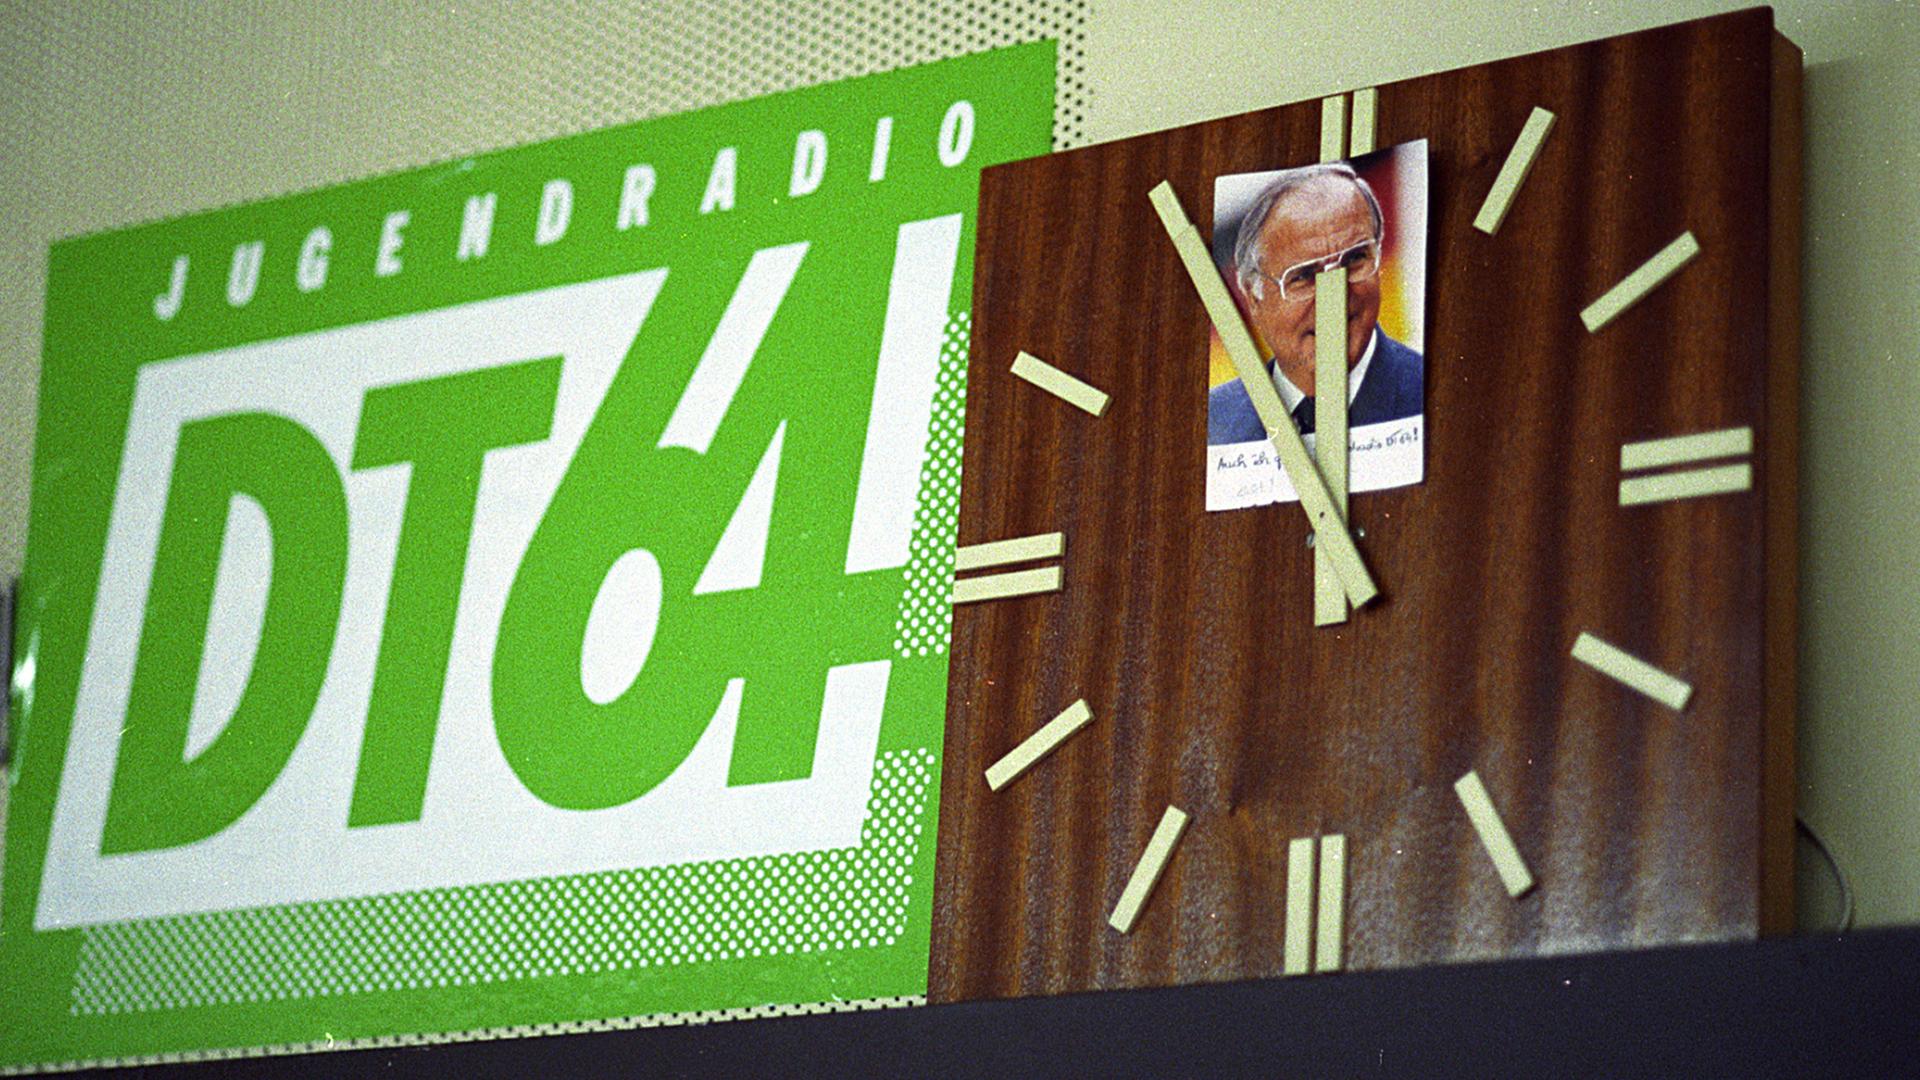 Das Logo vom Jugendradio DT64 auf einer Aufnahme von 1991.